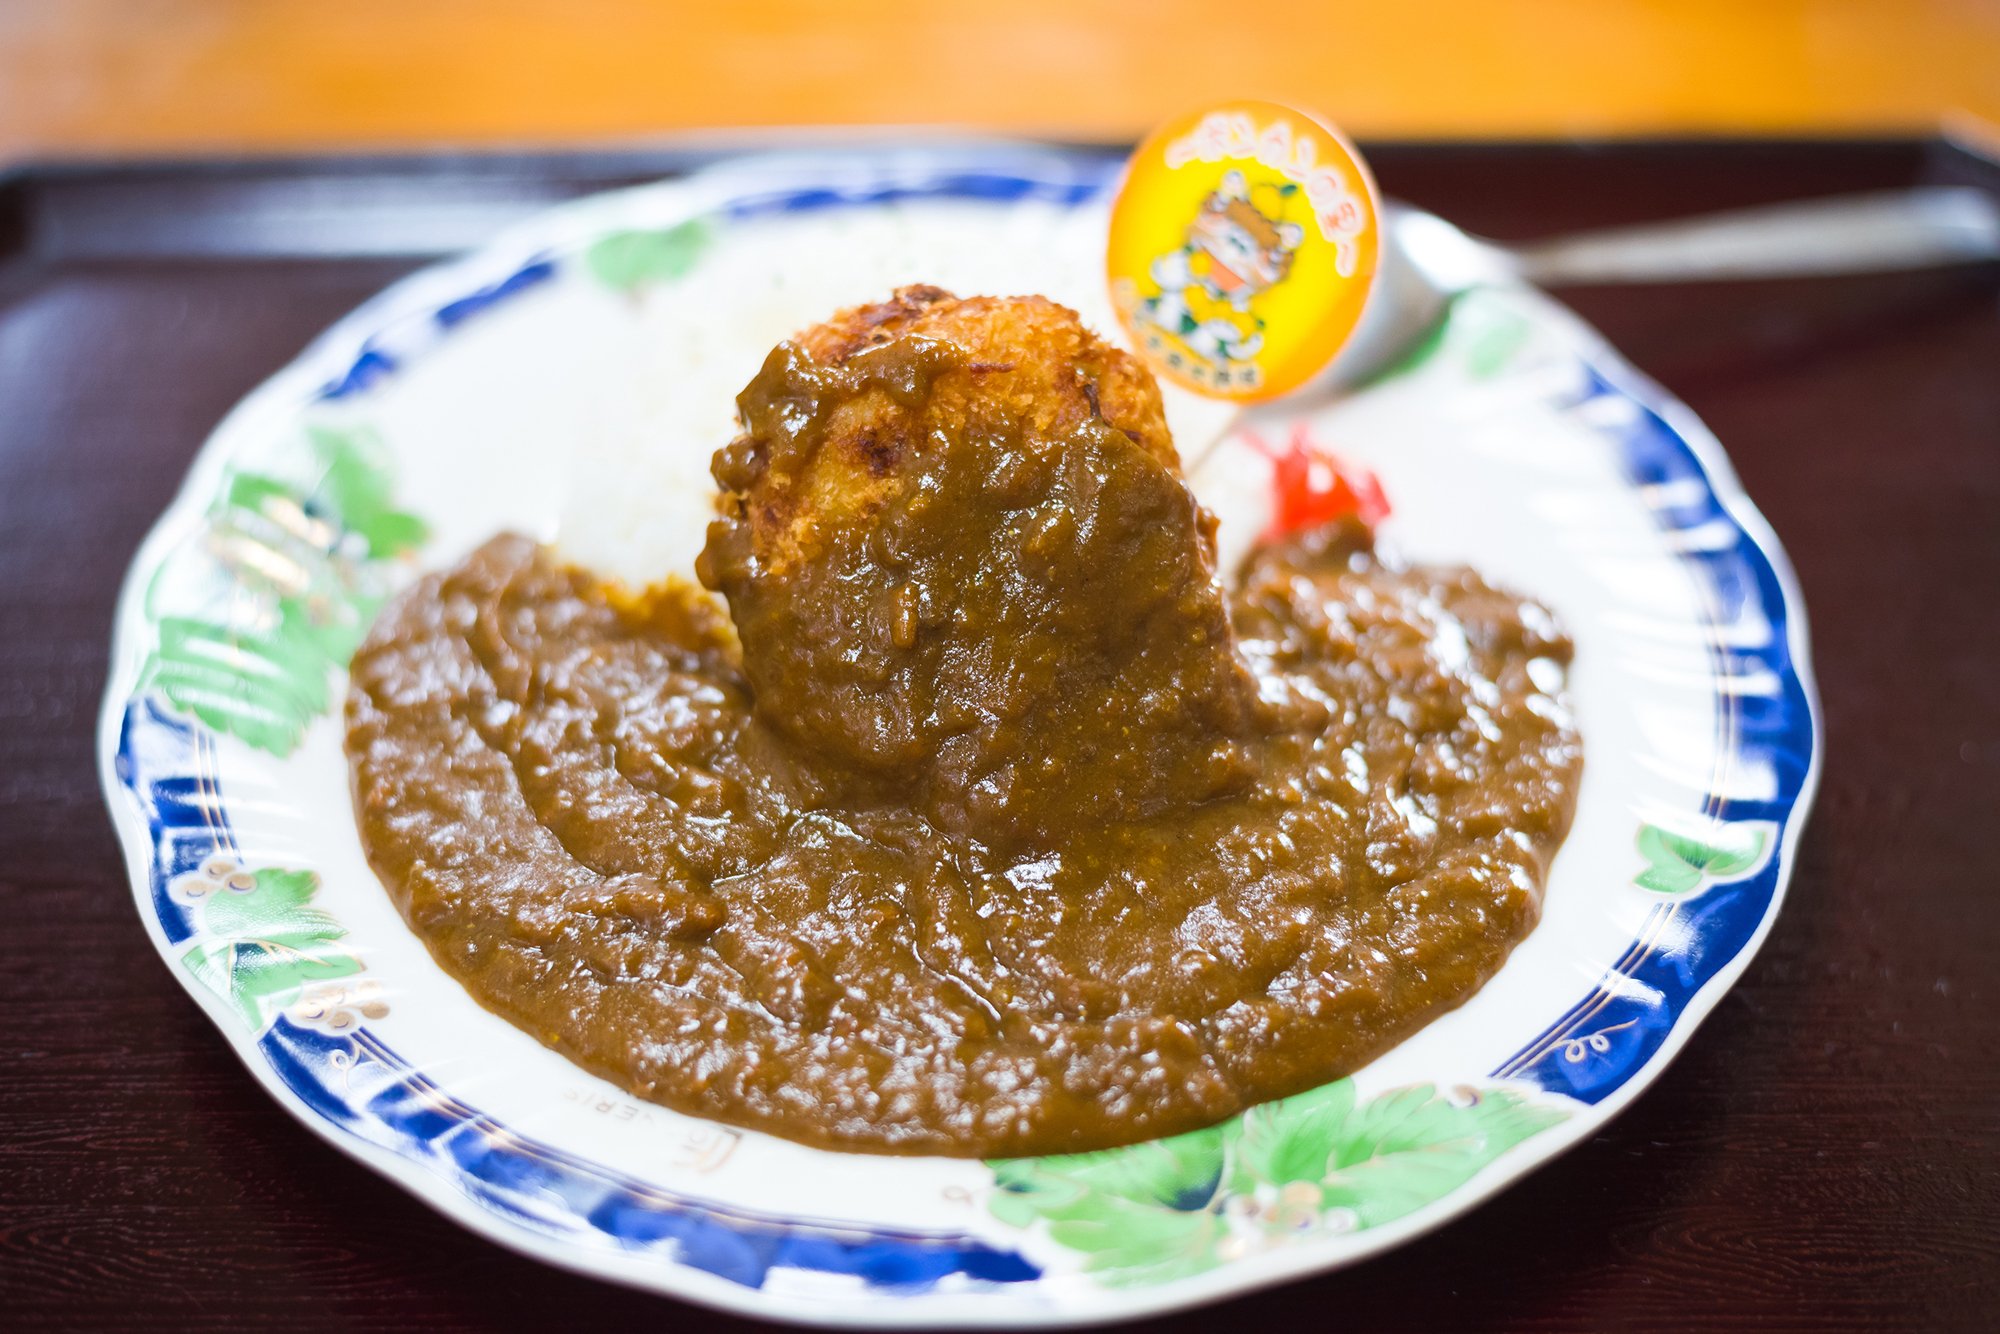 แกงกะหรี่ ญี่ปุ่น : แกงกะหรี่อิจิกิปอน (Ichiki Pon Curry) จ.คาโกชิม่า (KAGOSHIMA)